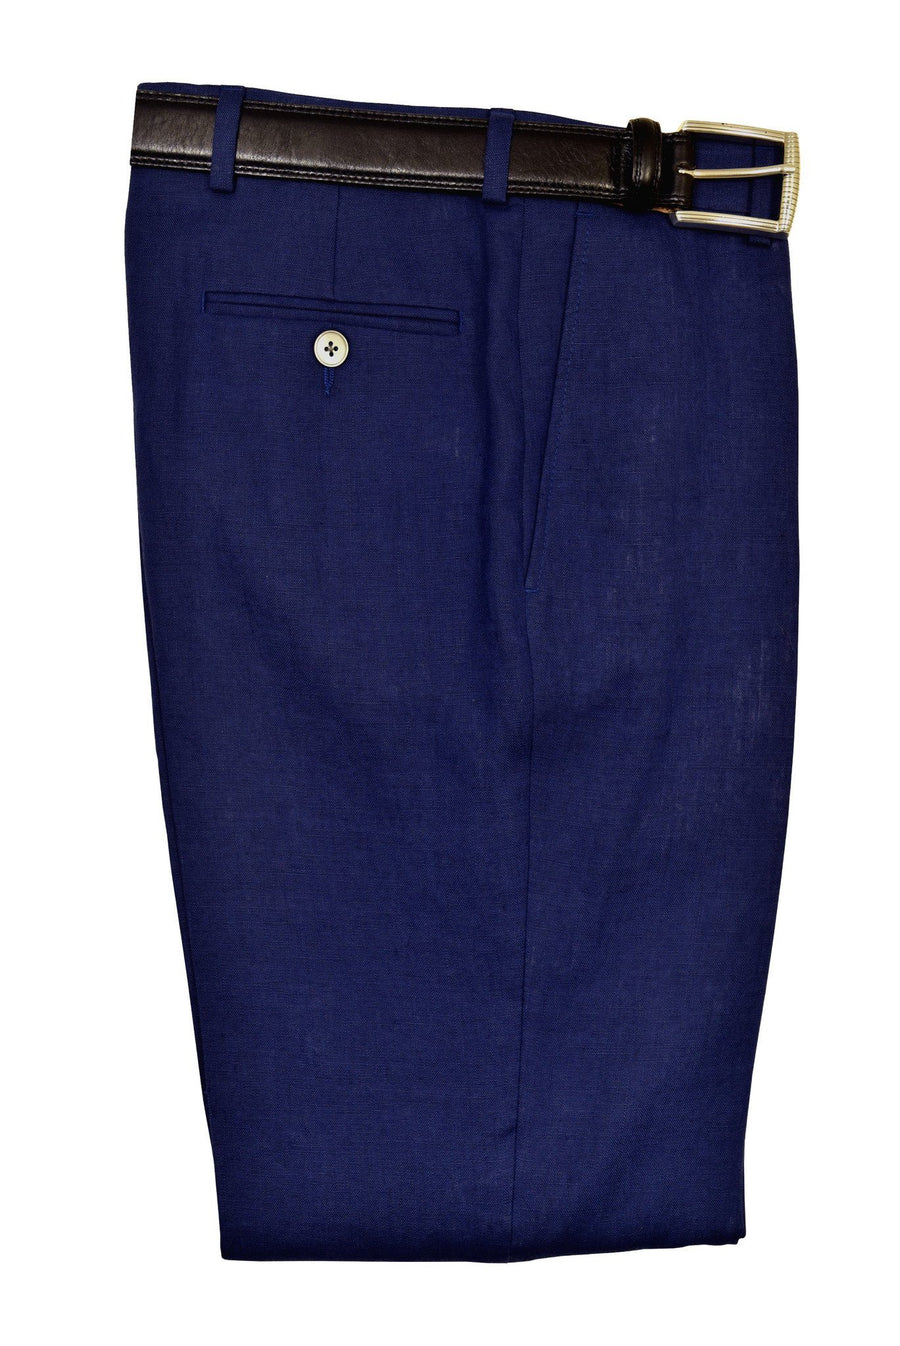 Lauren Ralph Lauren 19520P 100% Linen Boy's Suit Separate Pant - Linen - Blue, Plain Front Boys Suit Separate Pant Lauren 